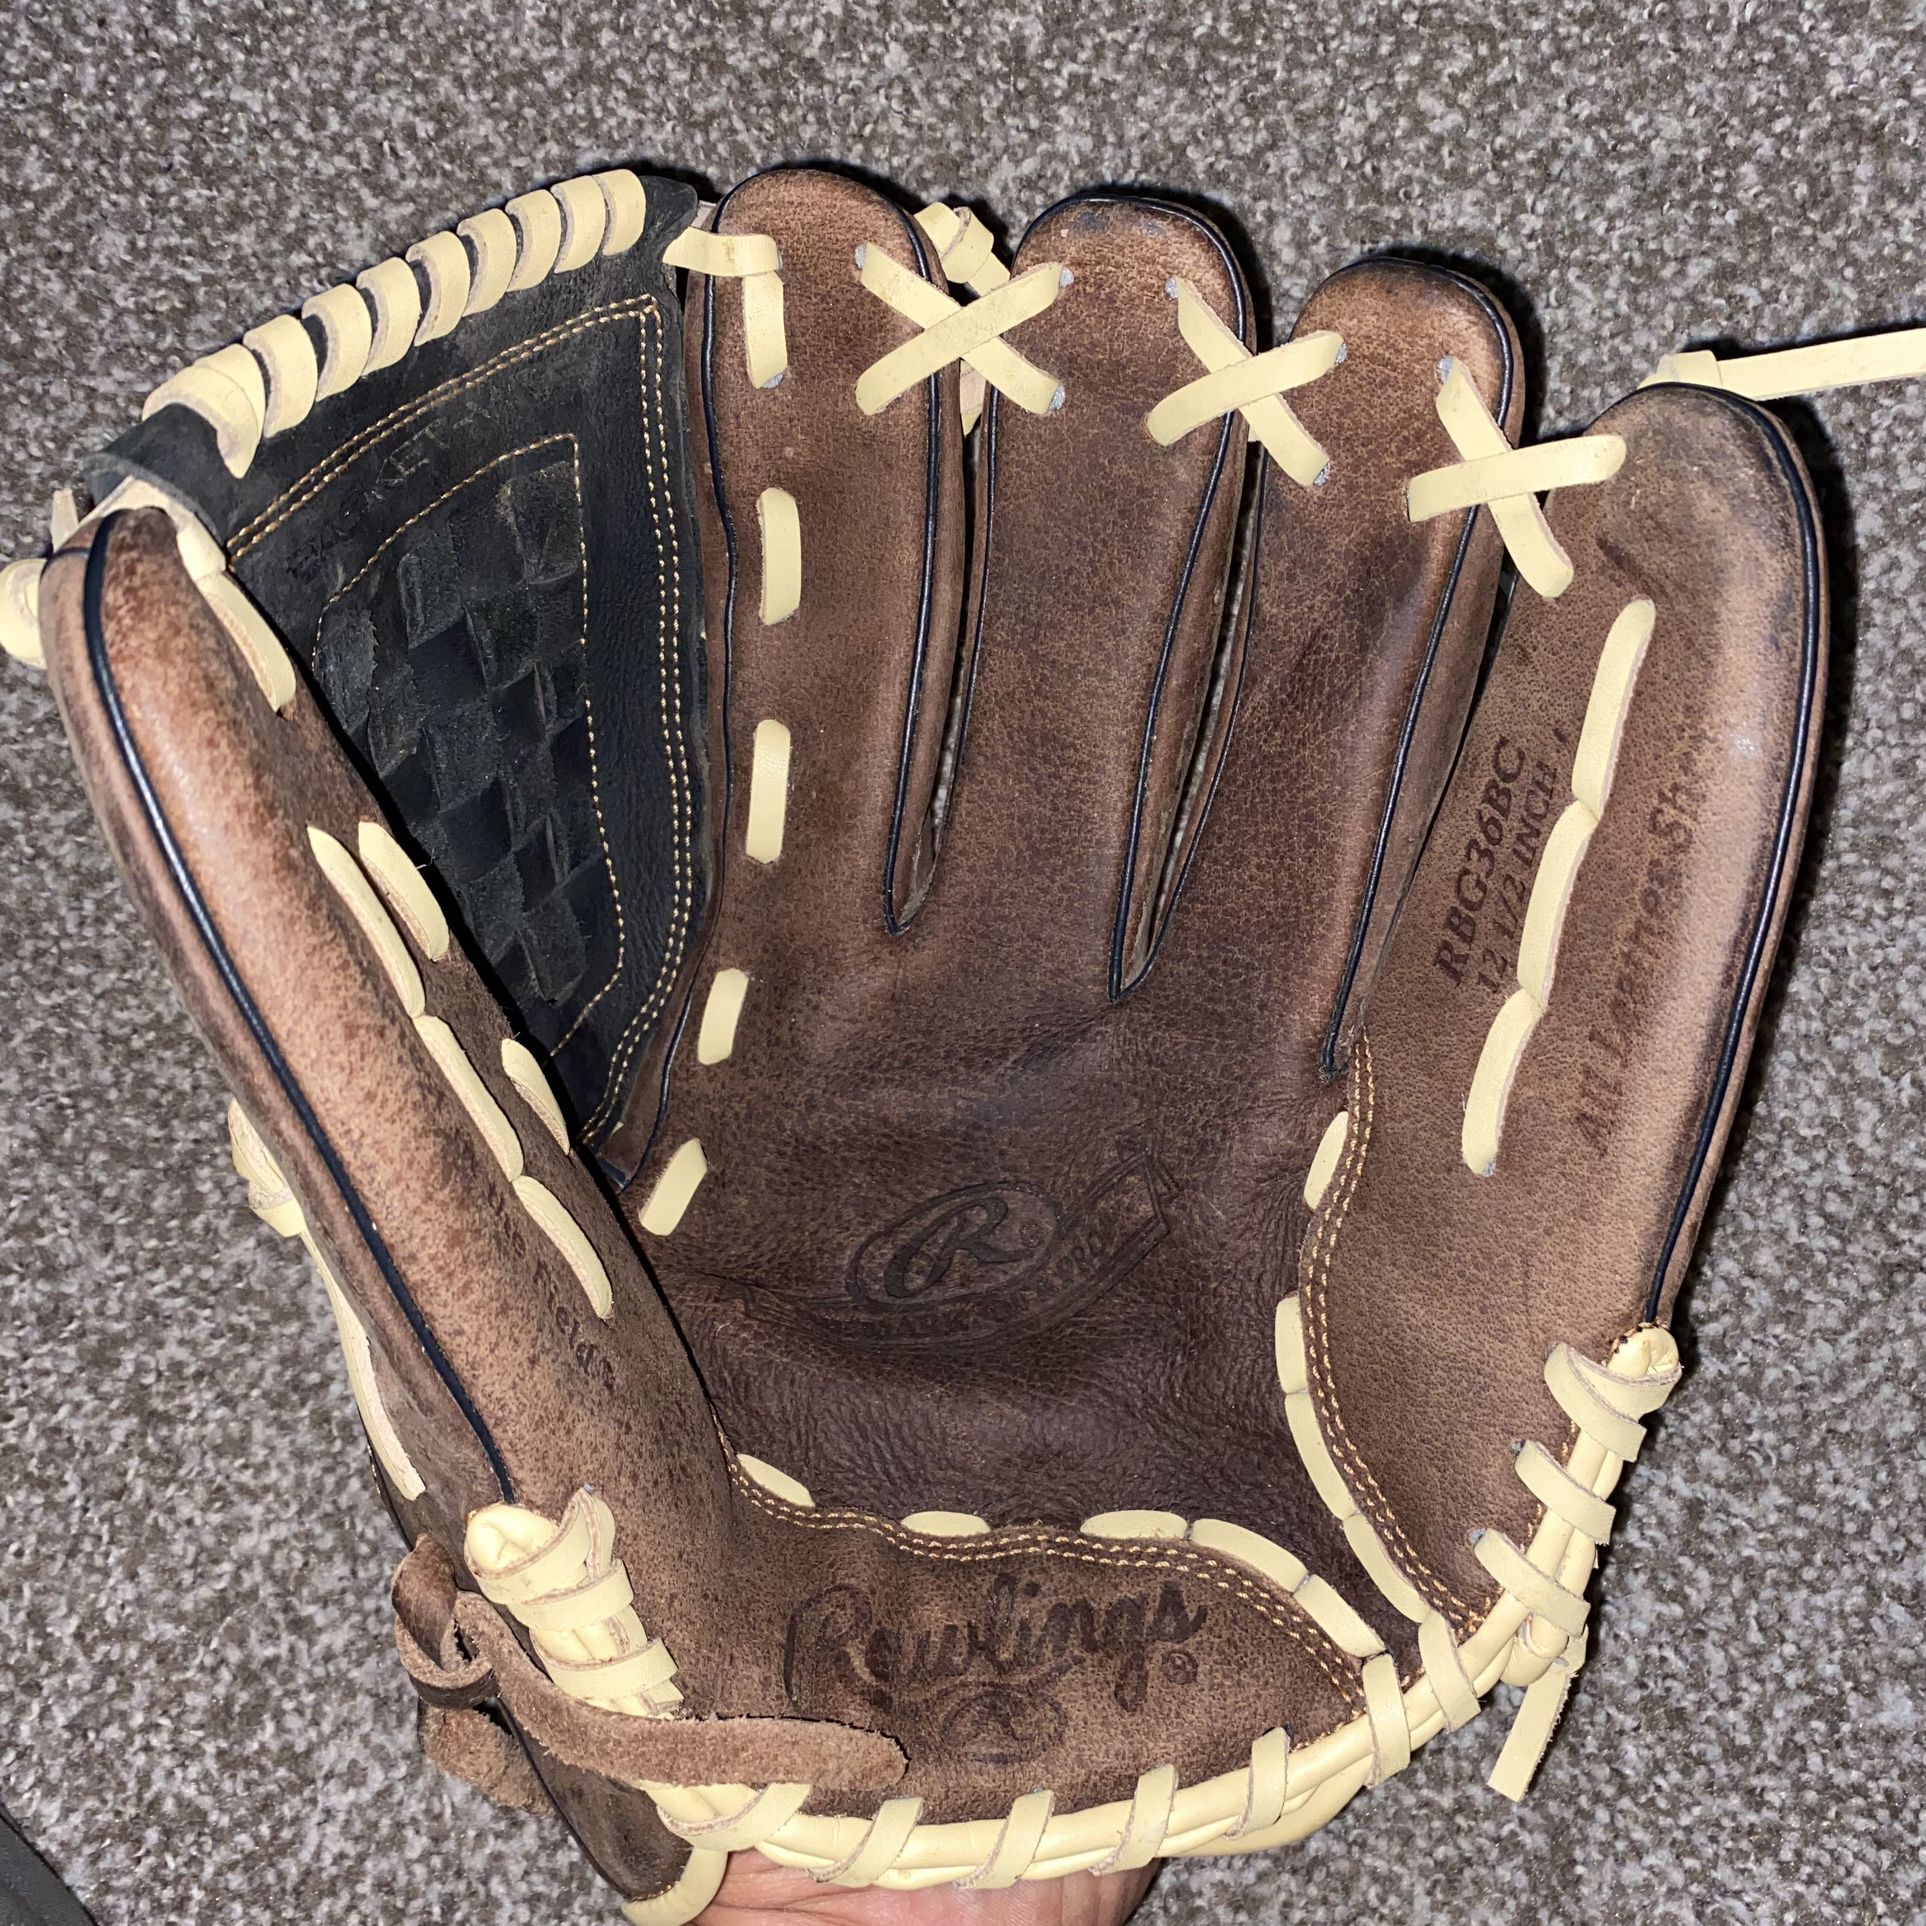 Baseball Glove, Bat, and Ball